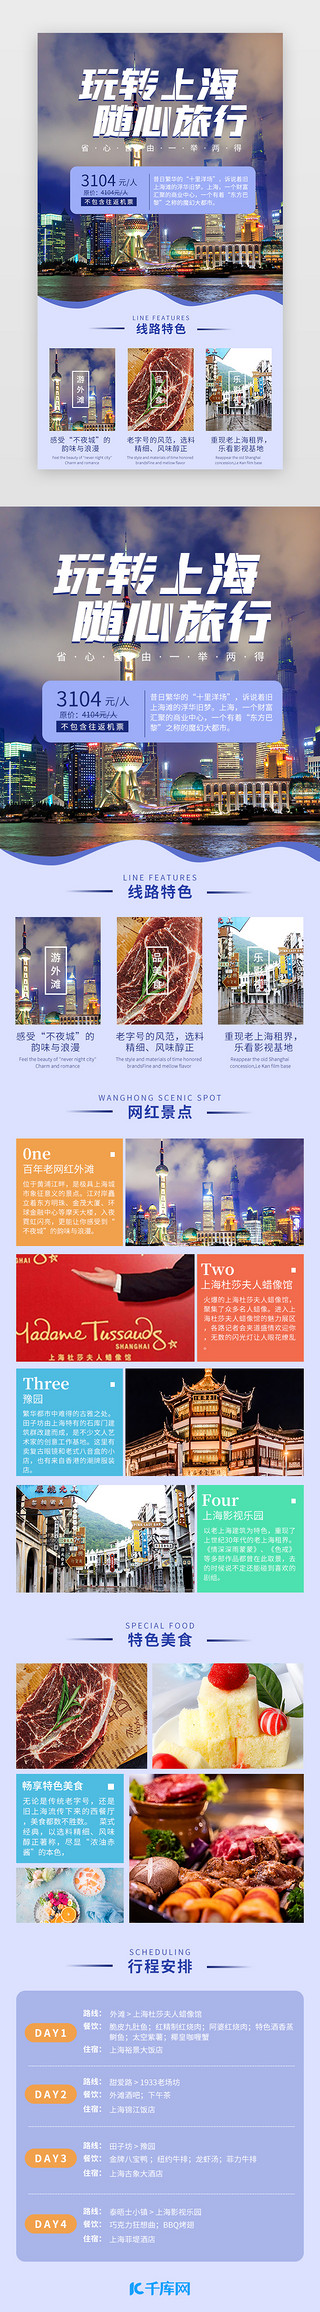 广州景点UI设计素材_玩转上海 随心旅行 蓝色简约景点介绍H5